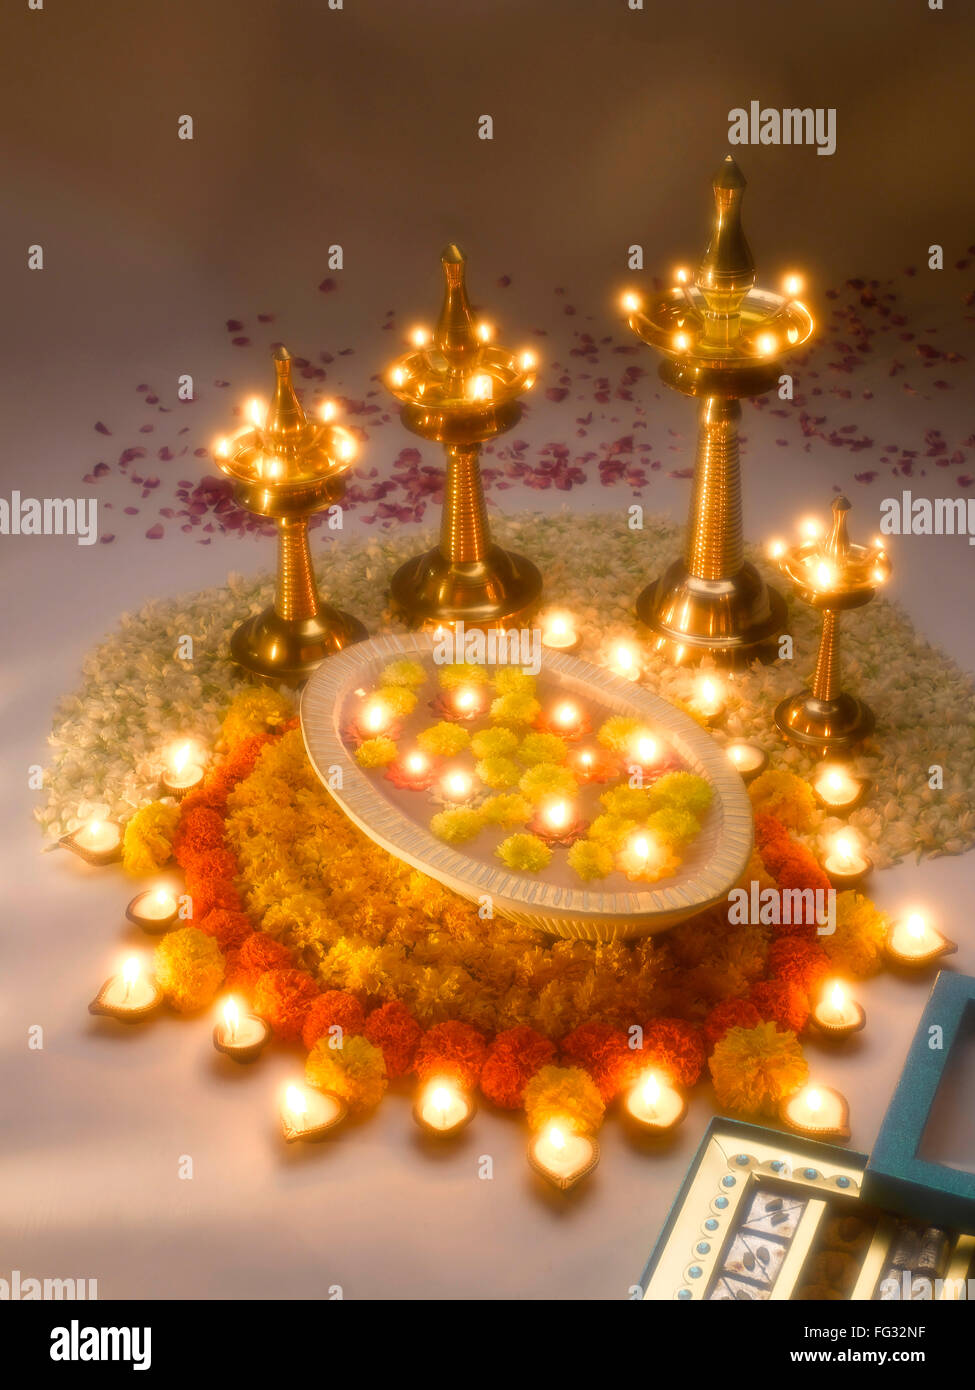 Diyas Öl Lampen und Blumen Arrangement für Diwali-fest; Indien Stockfoto